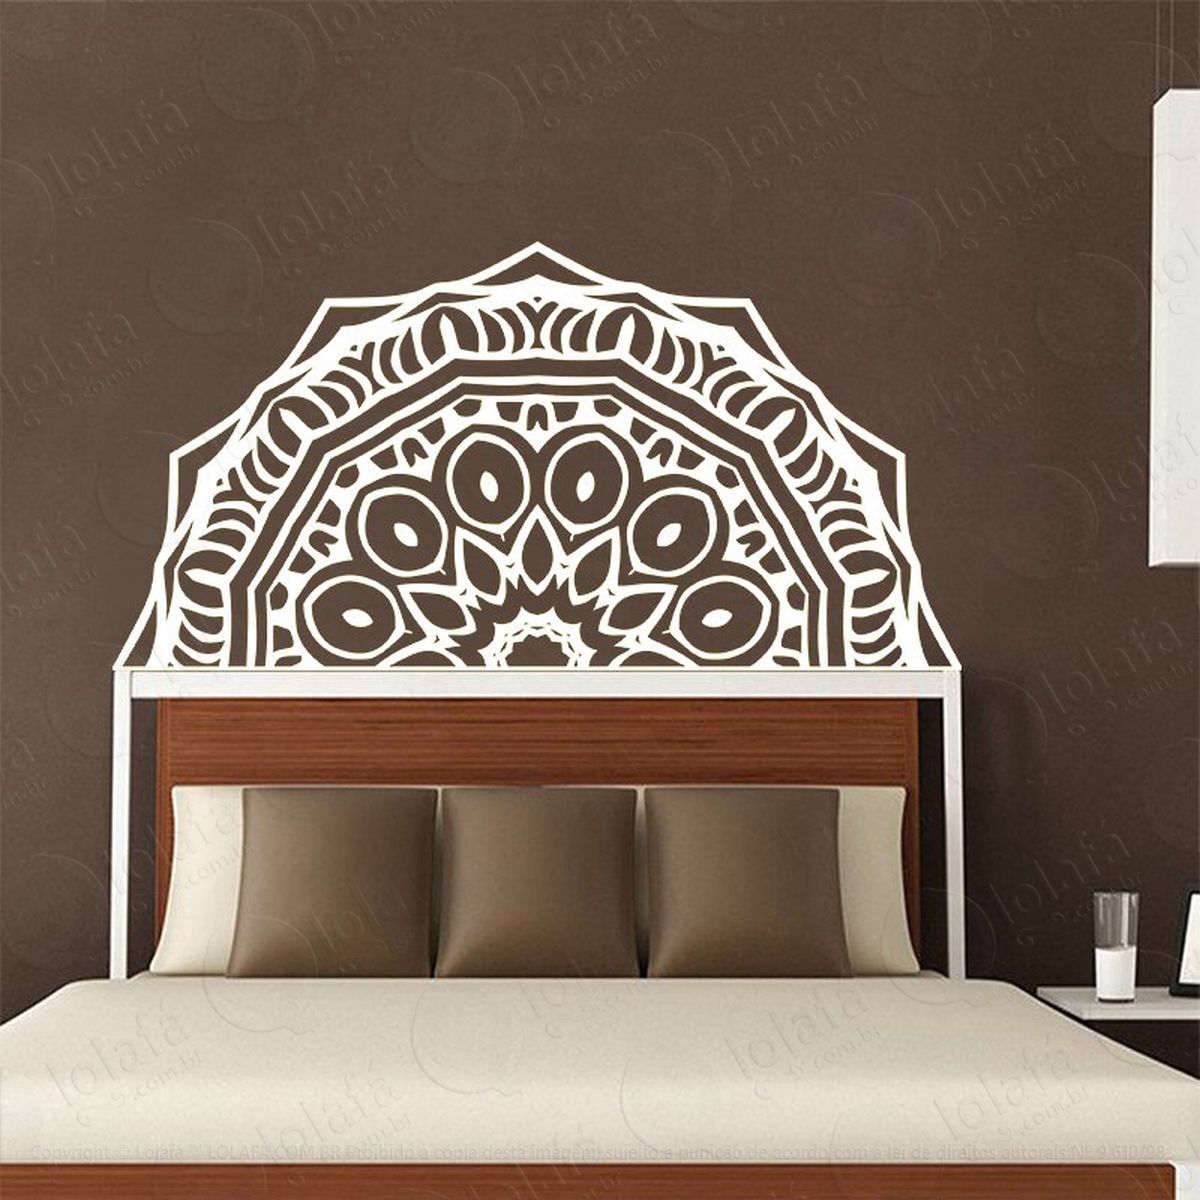 mandala da serenidade adesivo de parede decorativo para casa, quarto, sala e vidro - mod:454